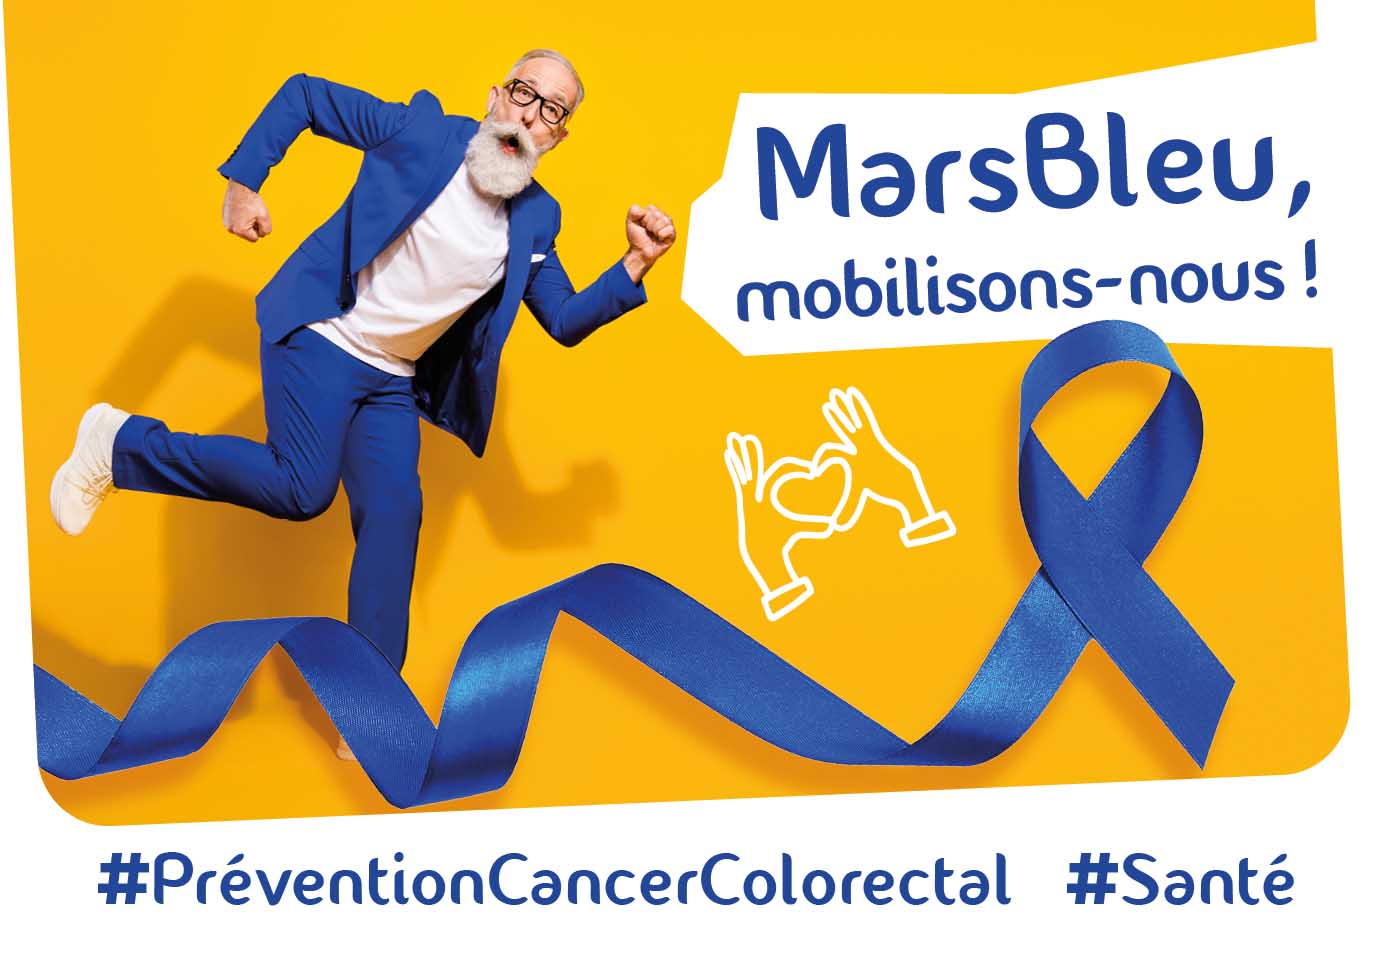 Mars Bleu : Ensemble, Mobilisons-nous pour la Prévention du Cancer Colorectal